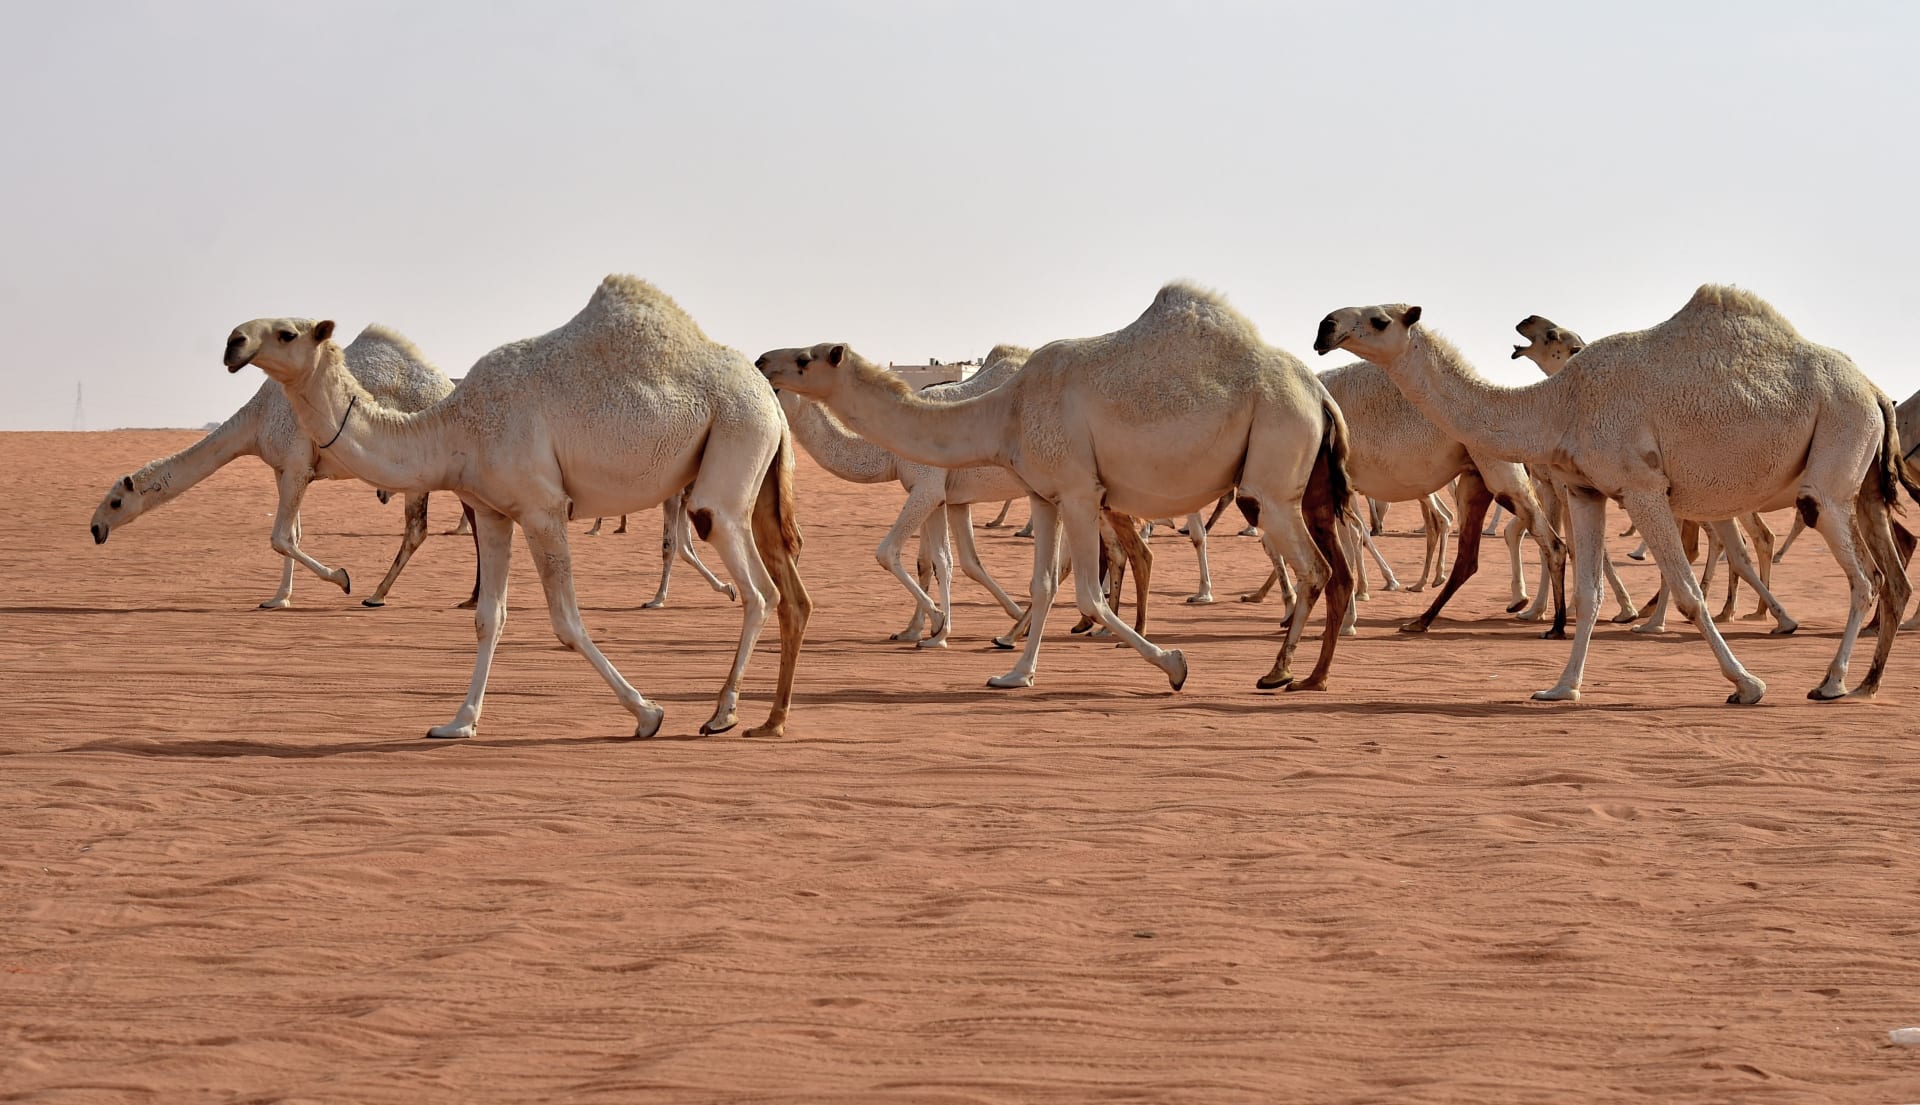 At se kameler i en drøm